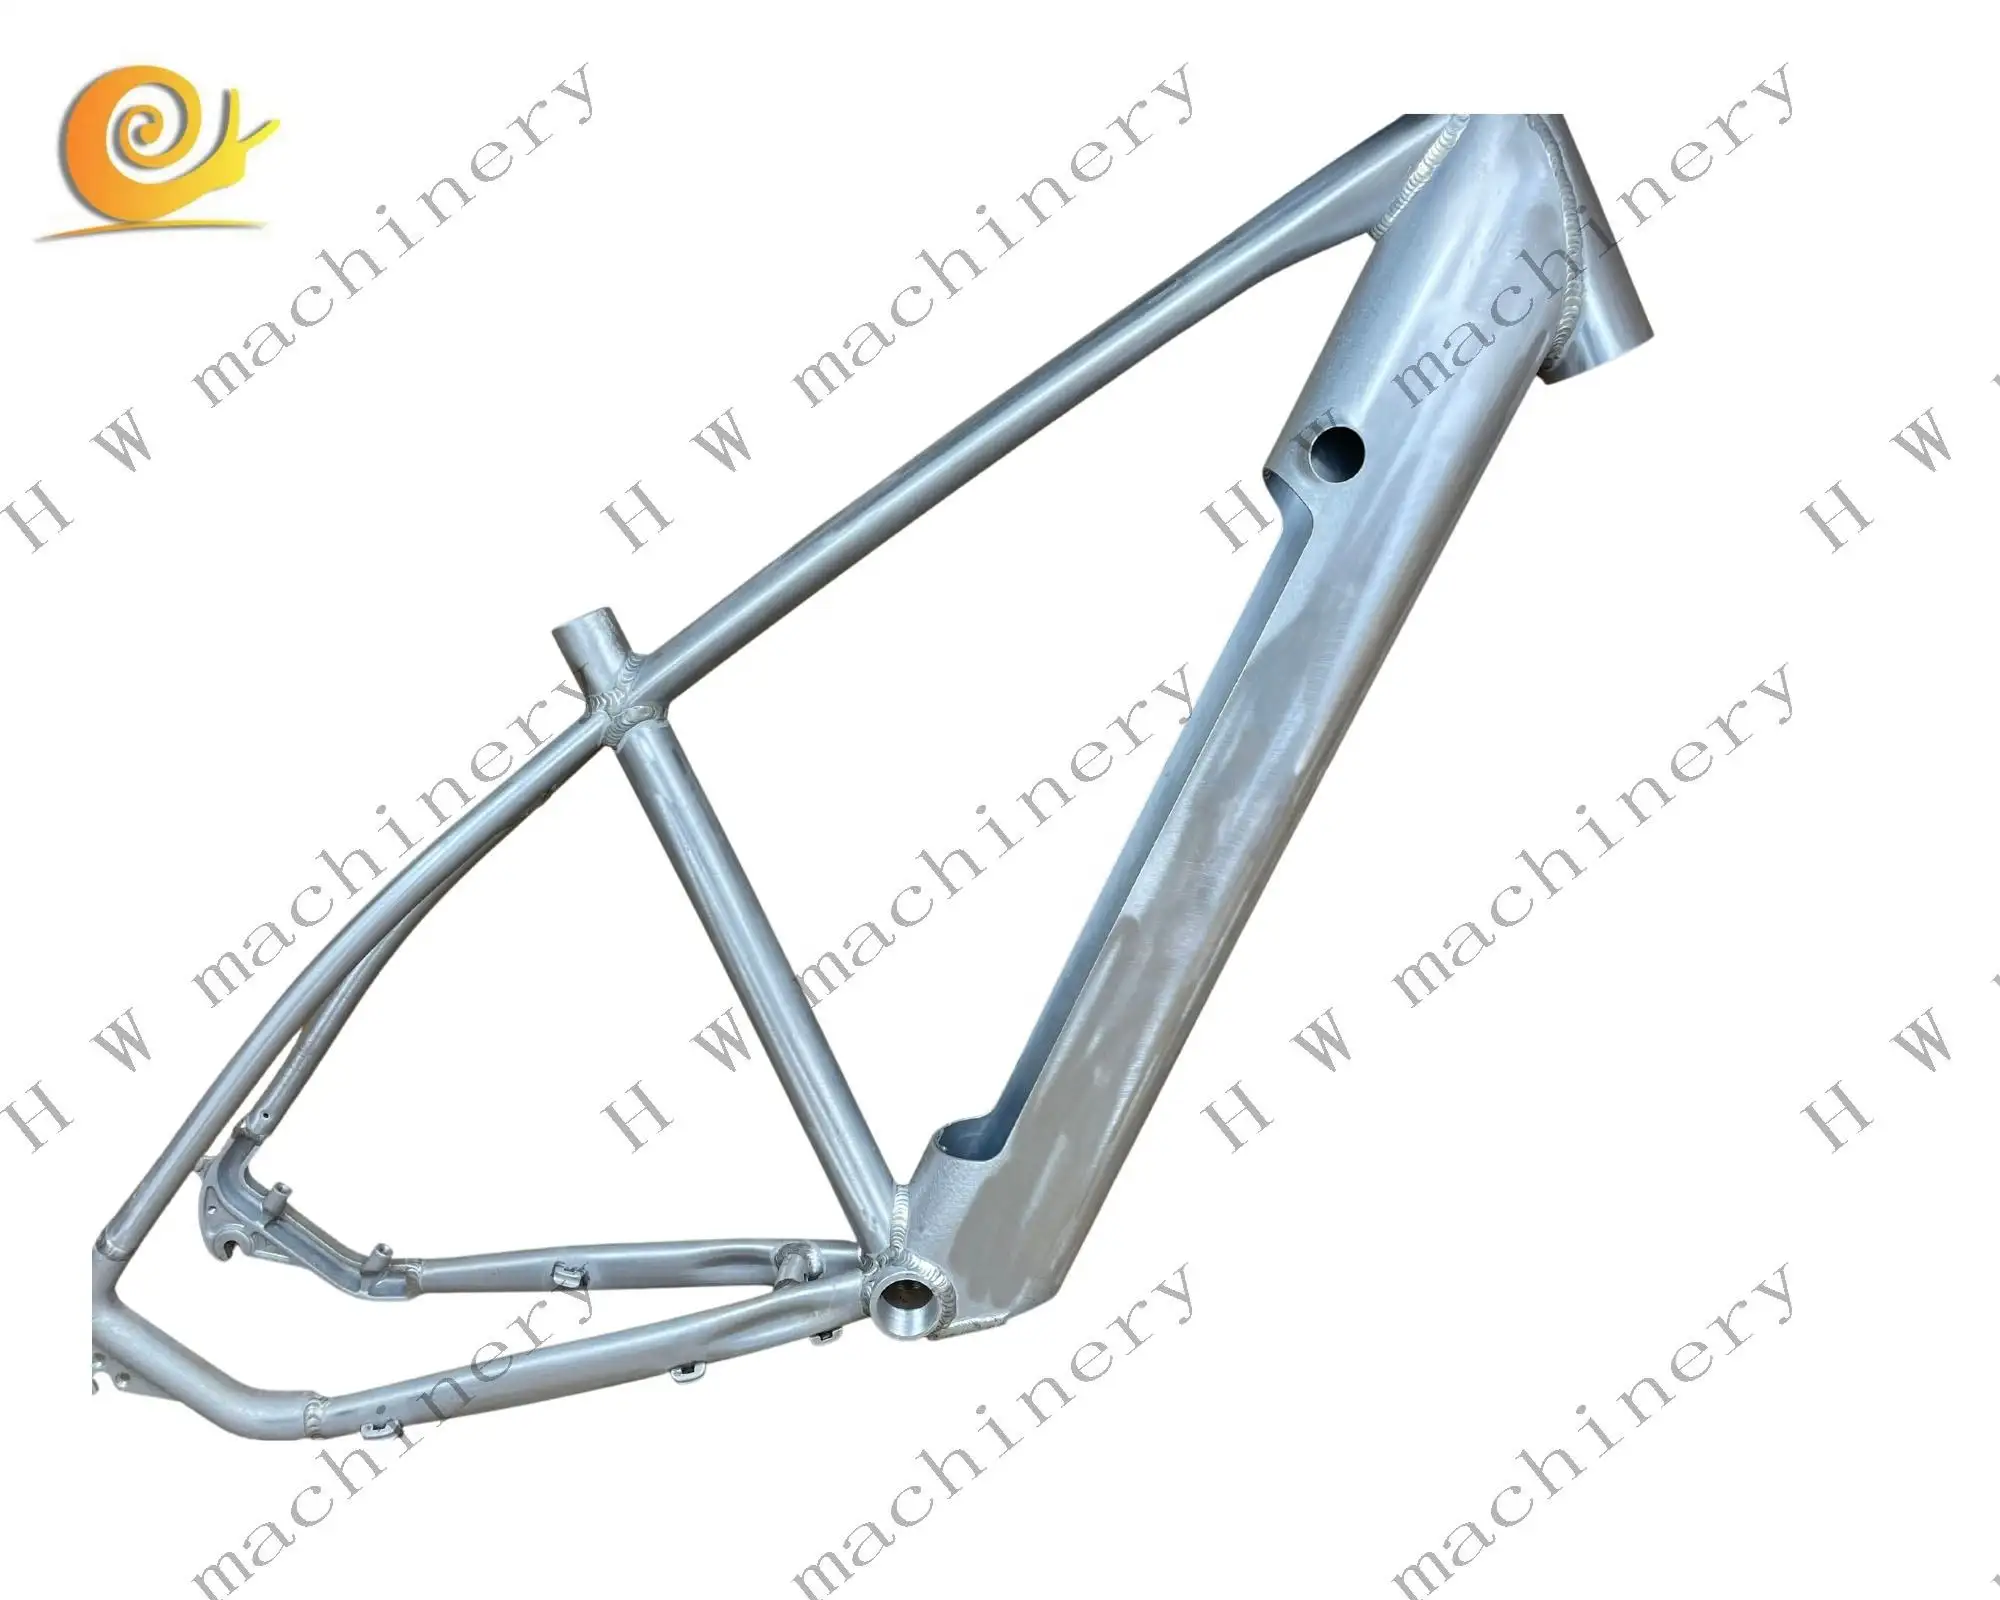 Nuovo prodotto telaio per bicicletta elettrica per bicicletta MTB in lega di alluminio con telaio ebike Eel pro di buona qualità